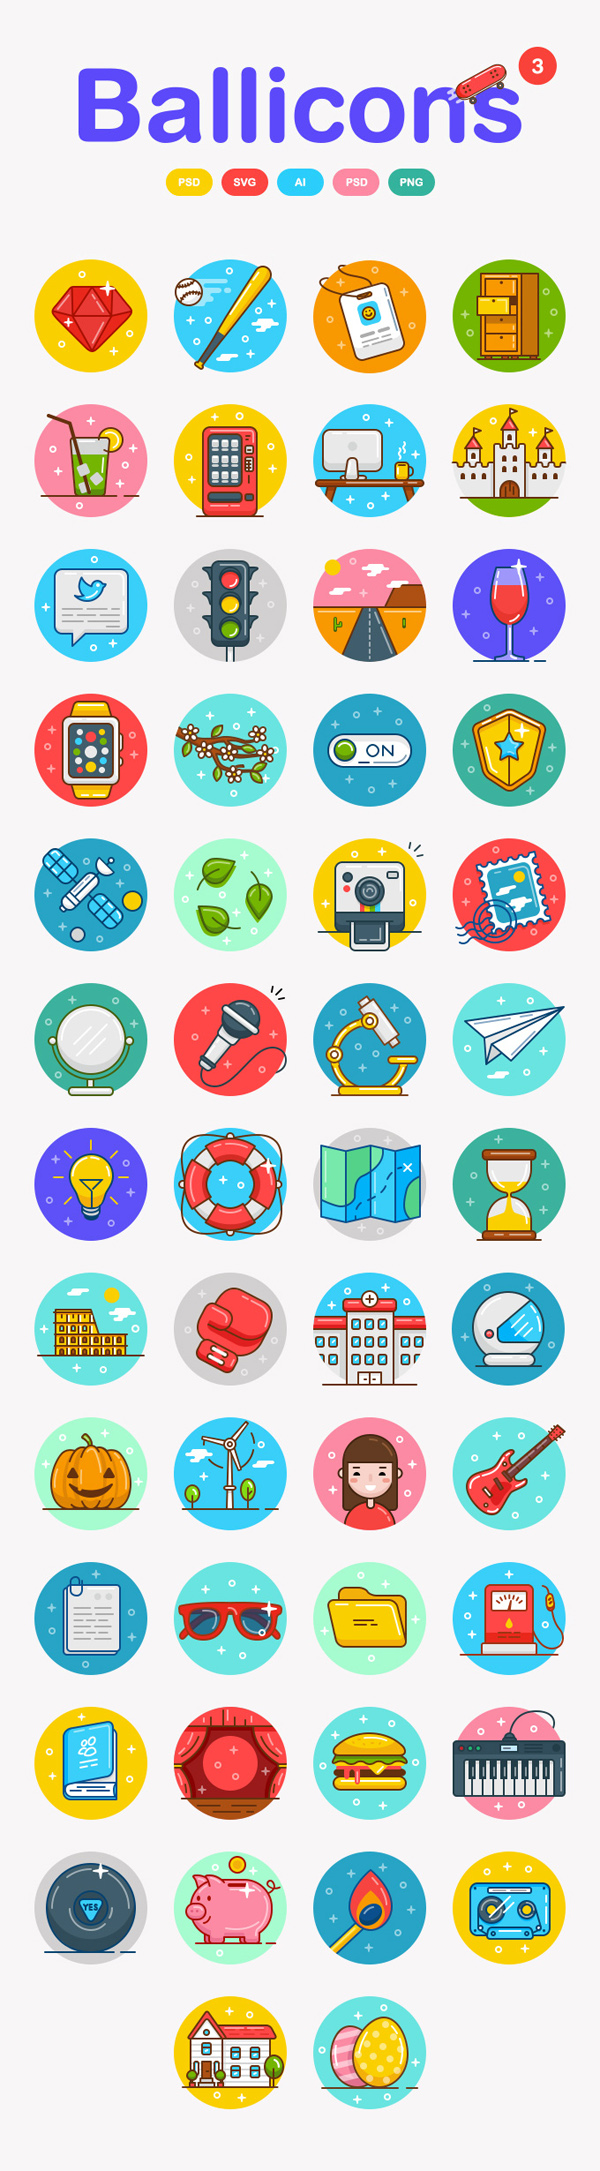 Free Ballicons Icons Set (50 Icons)